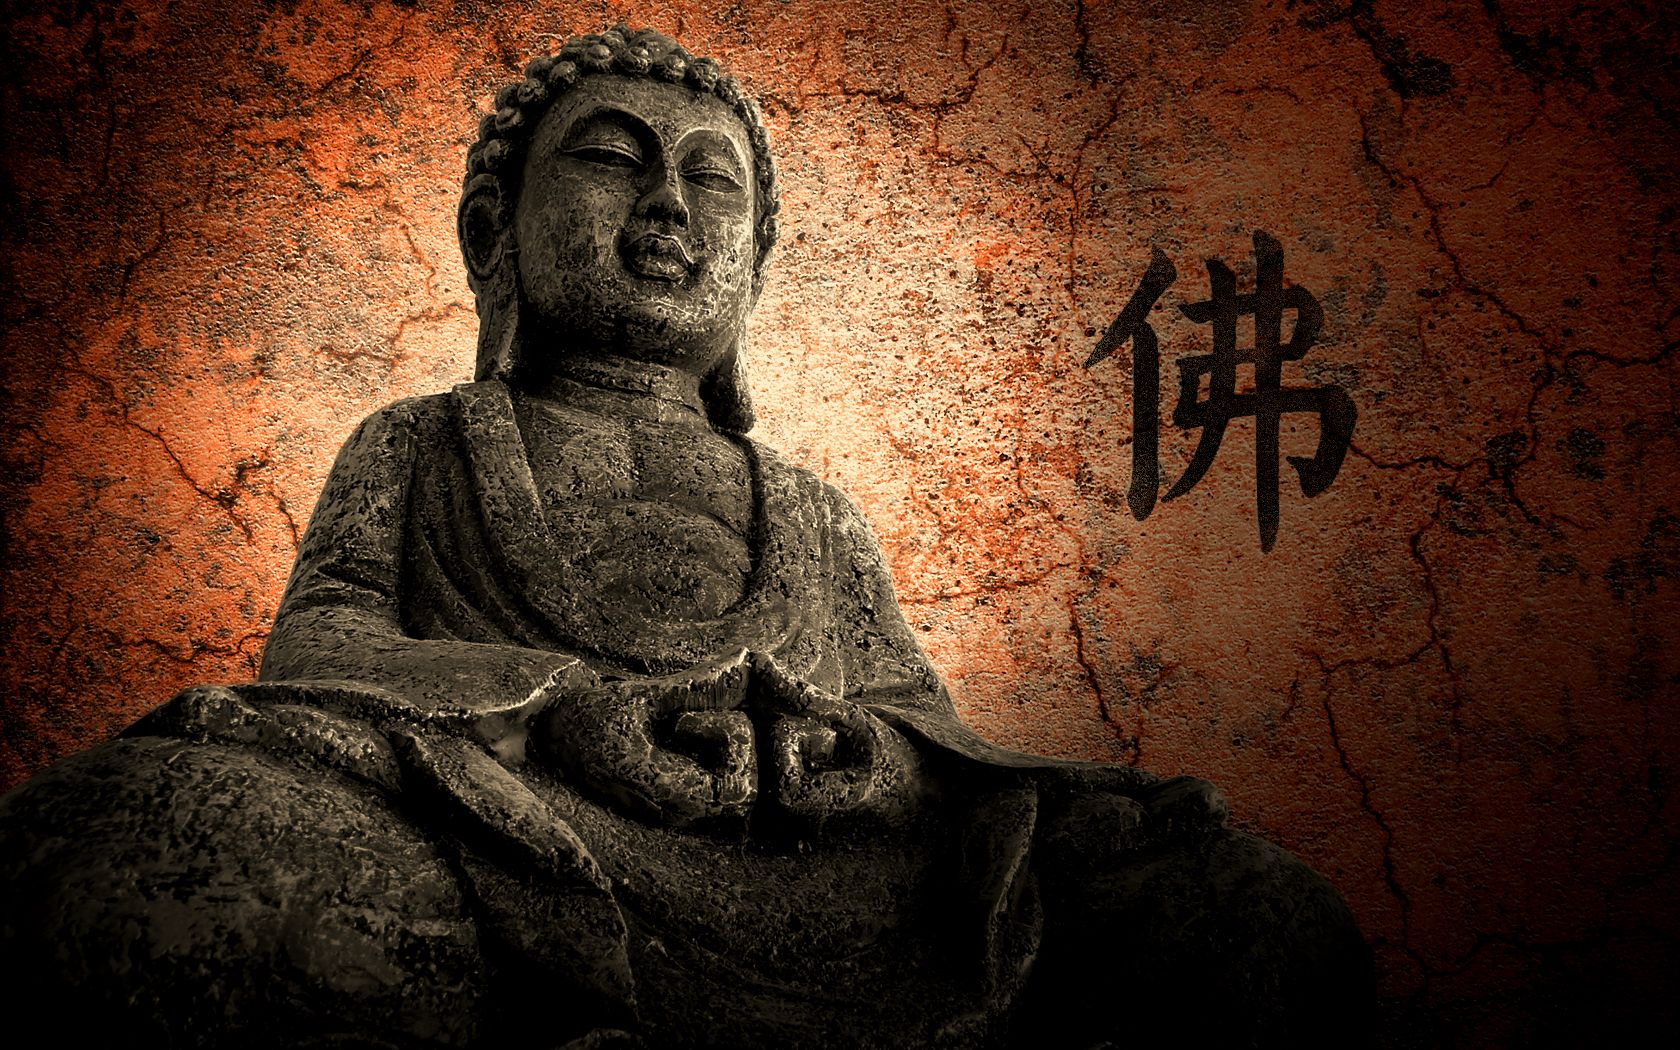 Buddha Wallpaper Images - Free Download on Freepik